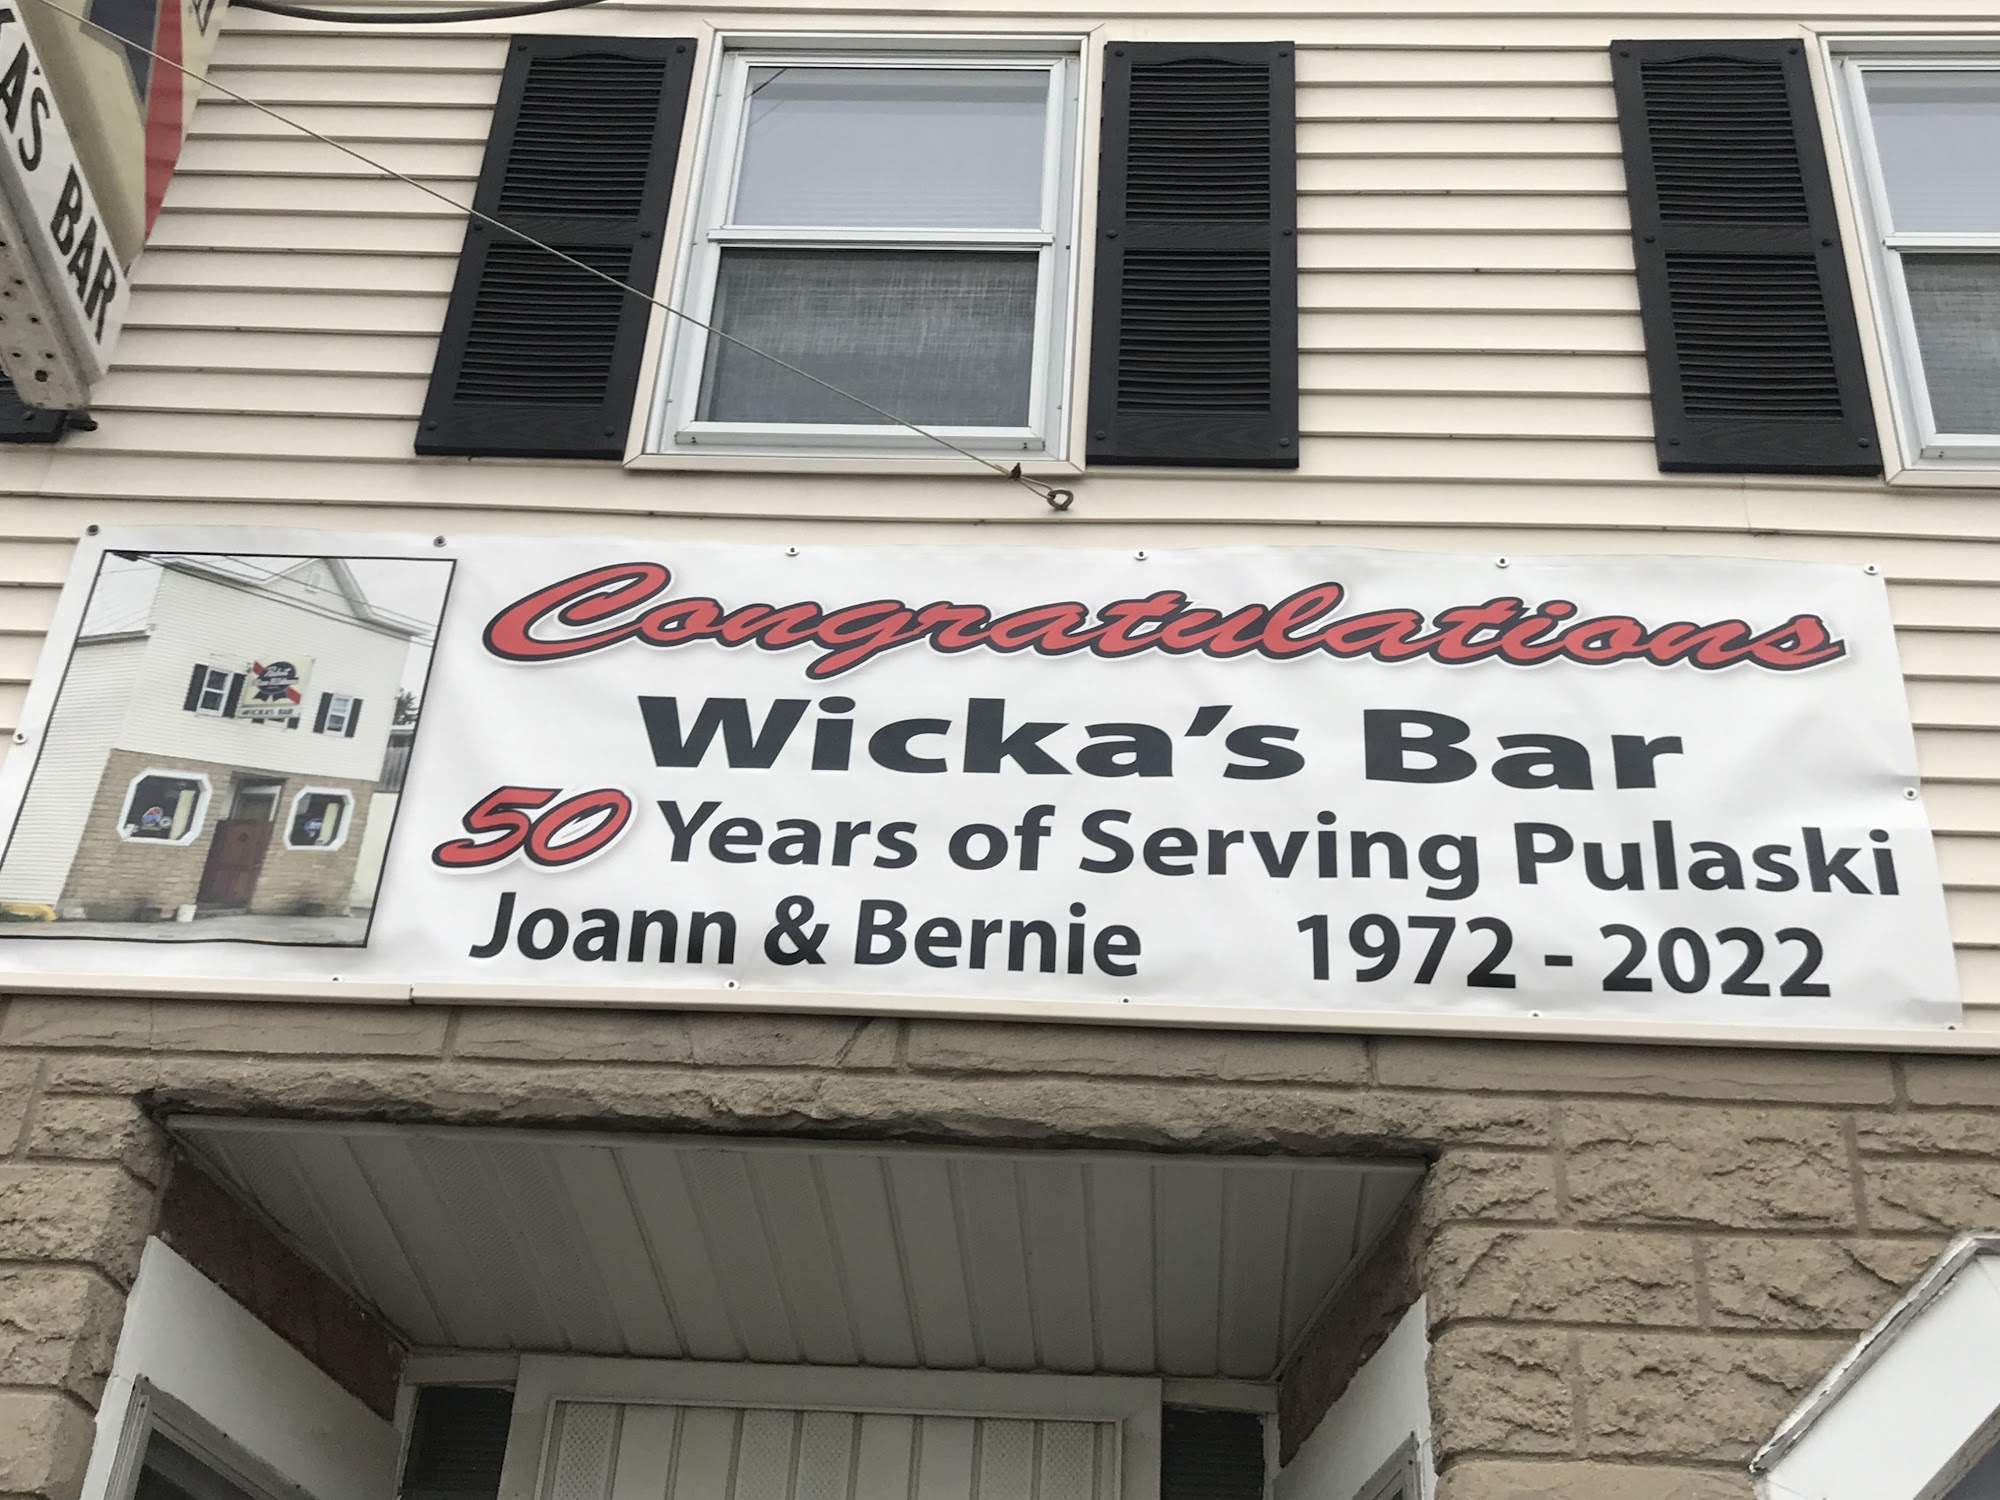 Wicka's Bar